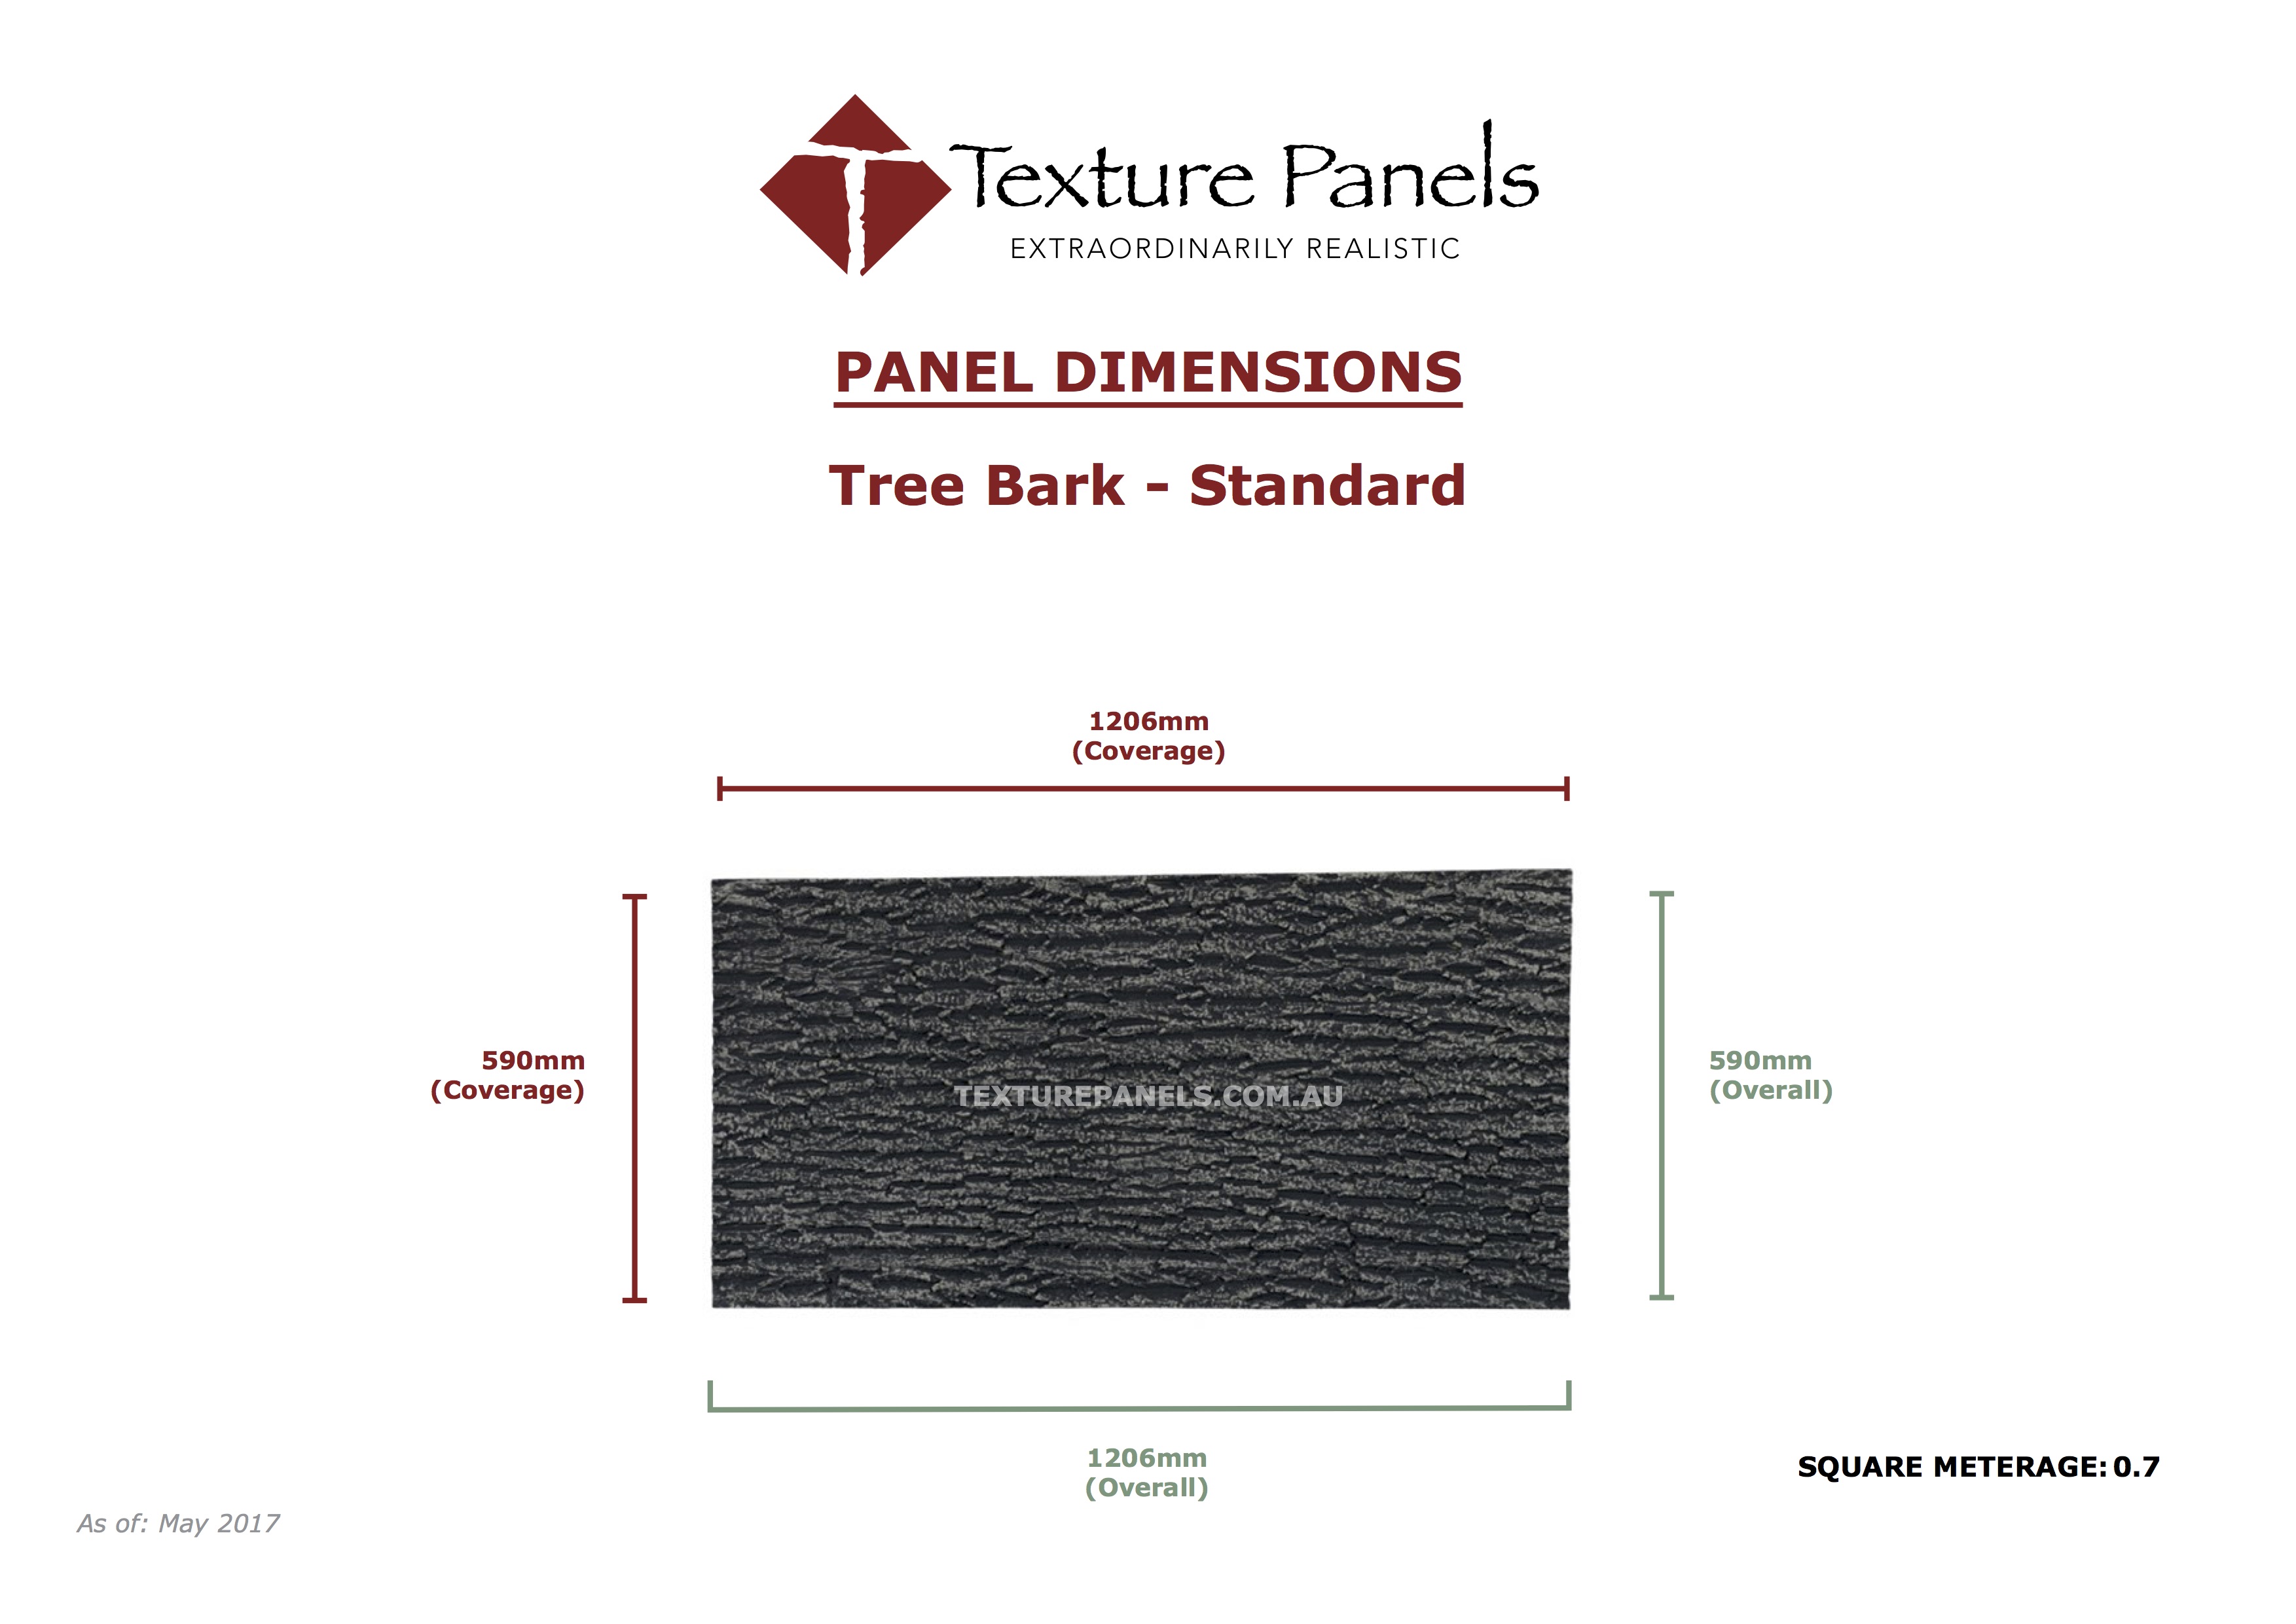 Tree Bark Standard - Dimensions